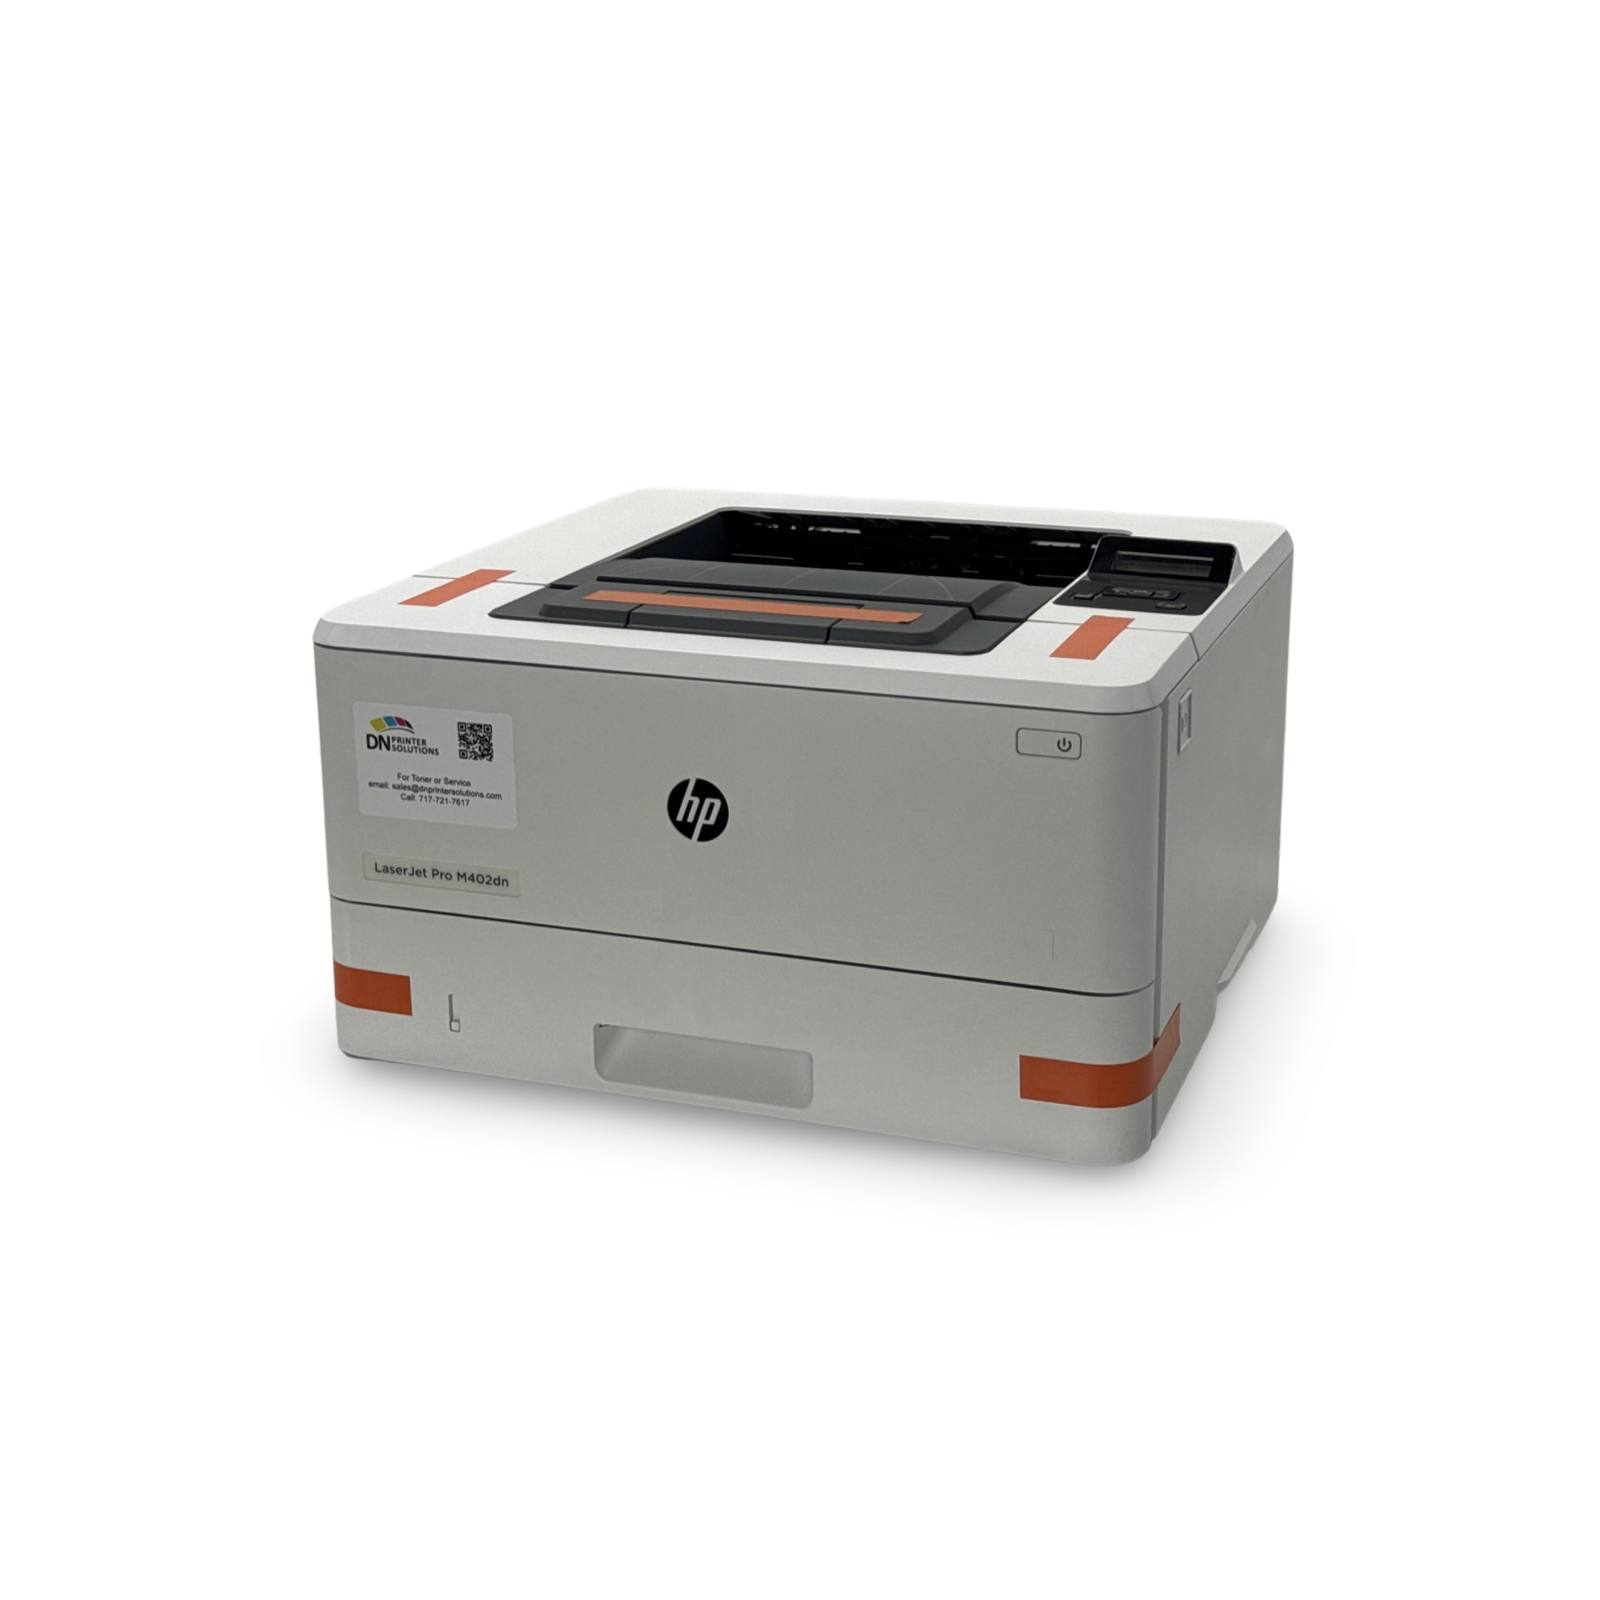 HP LaserJet Pro M402dn Laser Printer C5F94A Refurbished